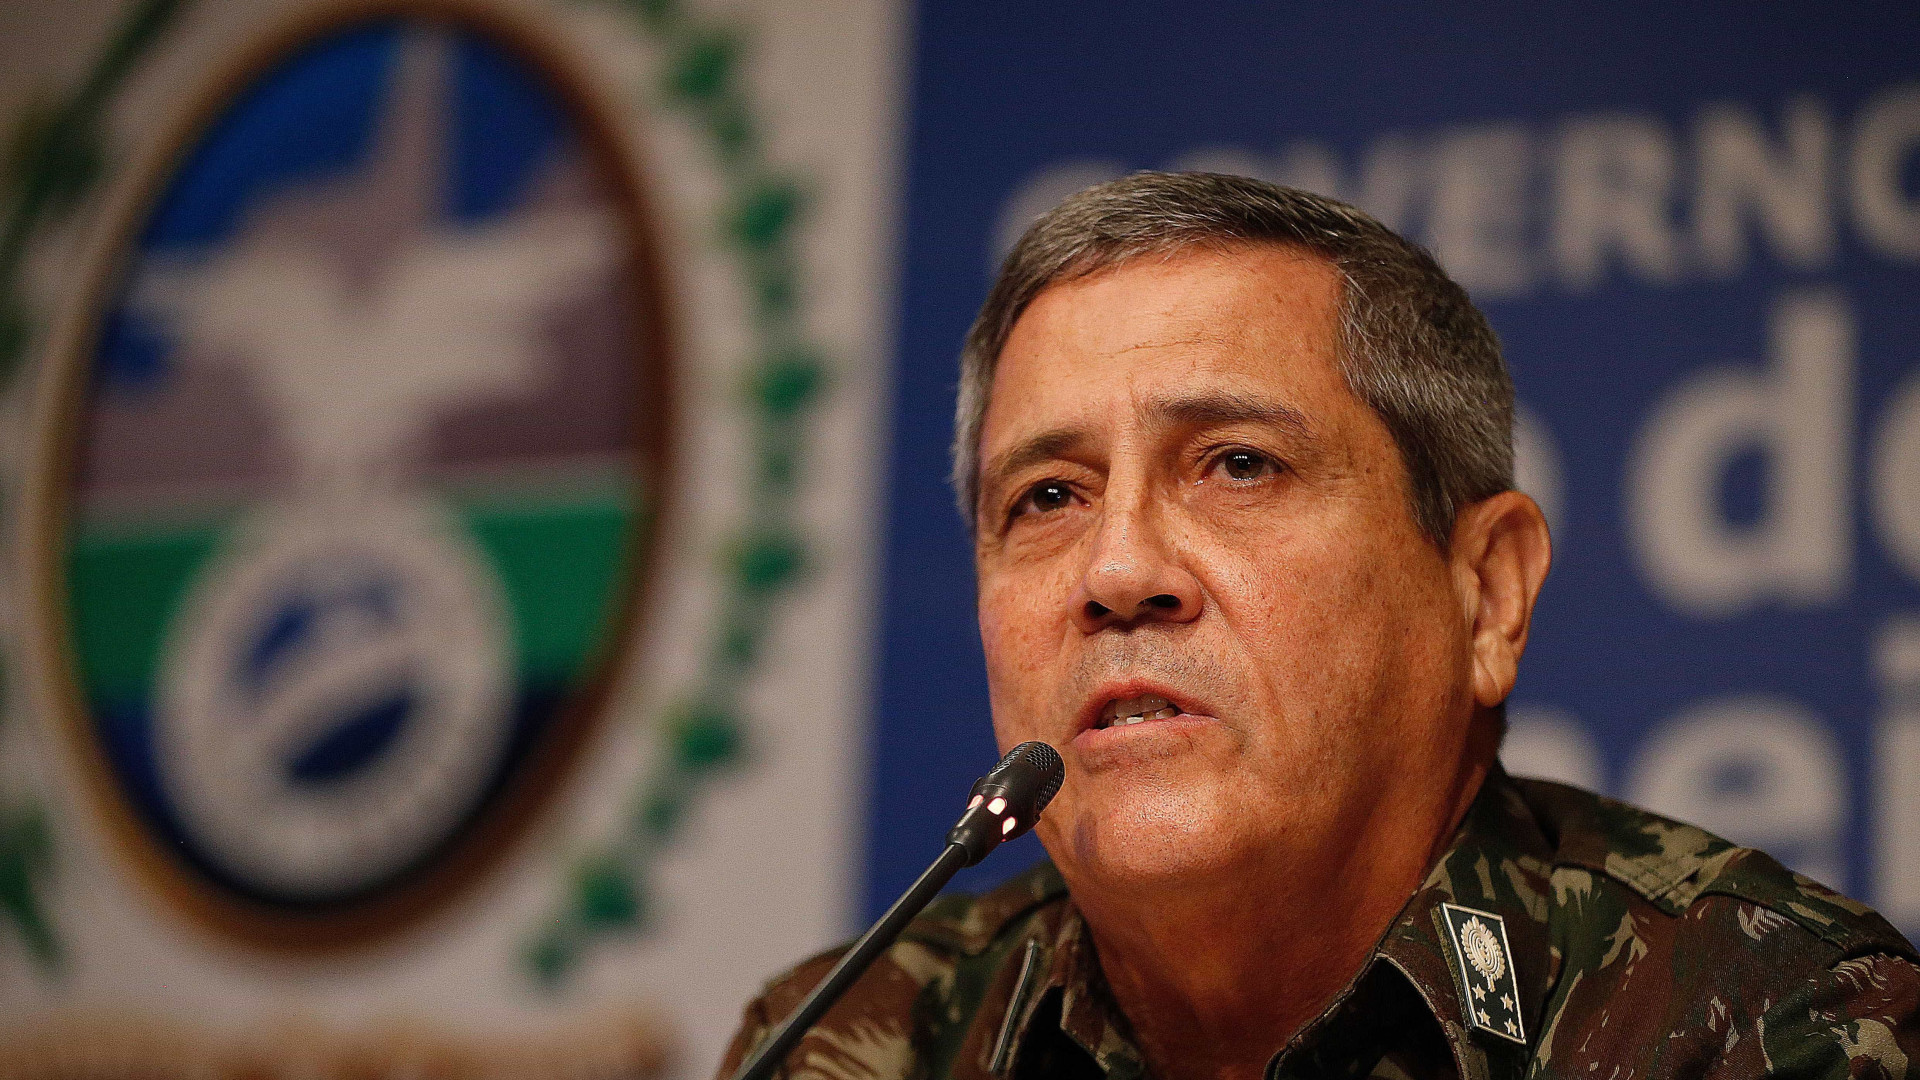 'Cumprimos a missão', diz general sobre intervenção no Rio